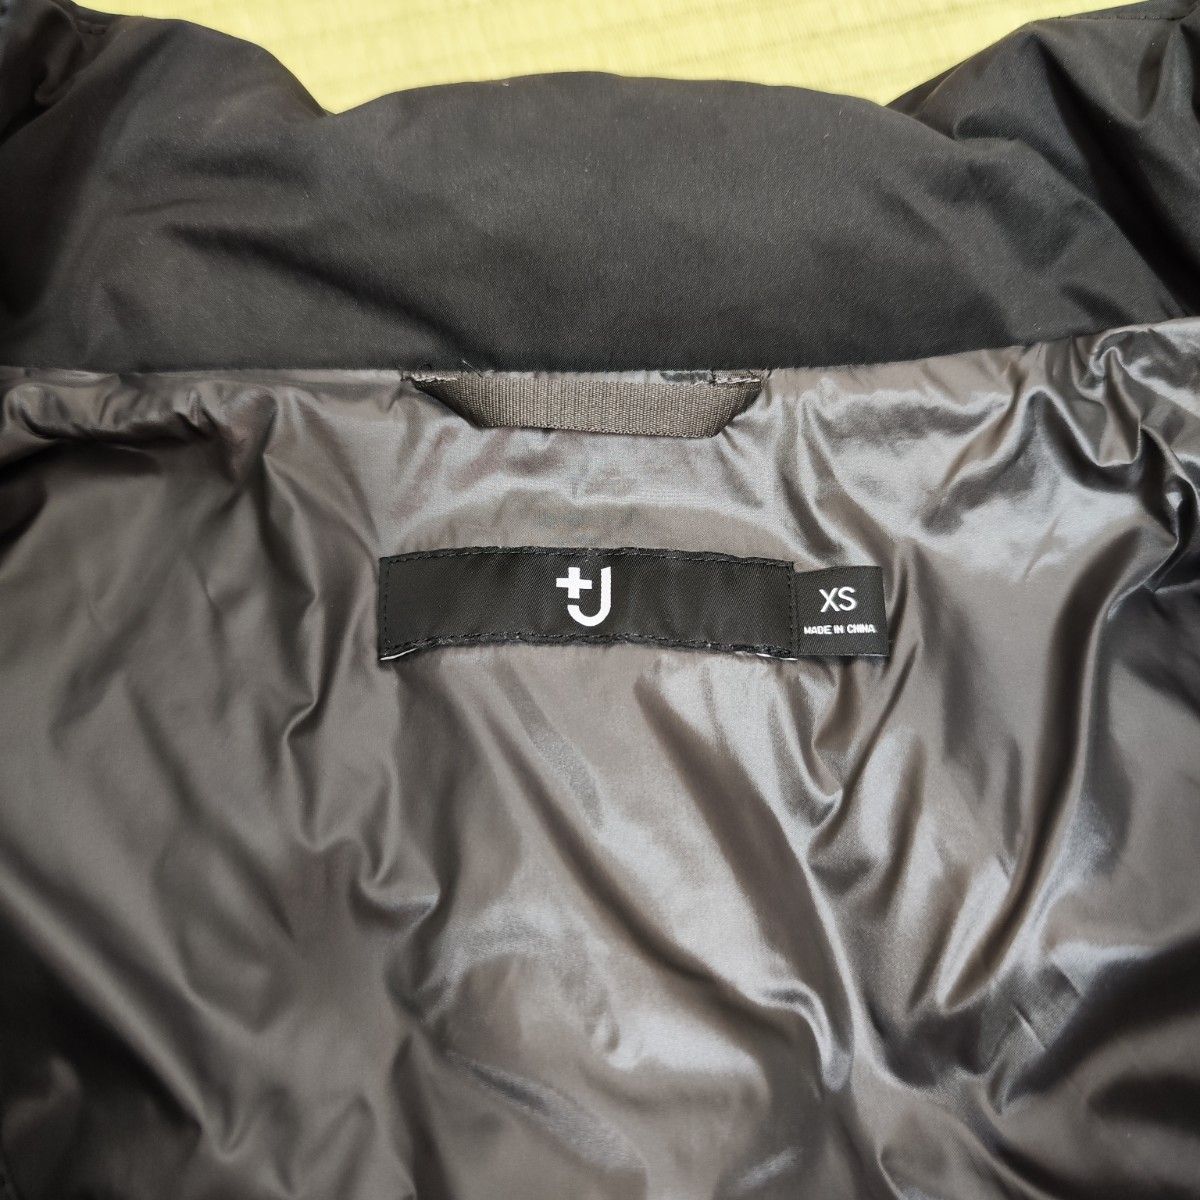 UNIQLO +J ダウンオーバーサイズパーカ XS ブラック ユニクロ 黒 ダウンジャケット